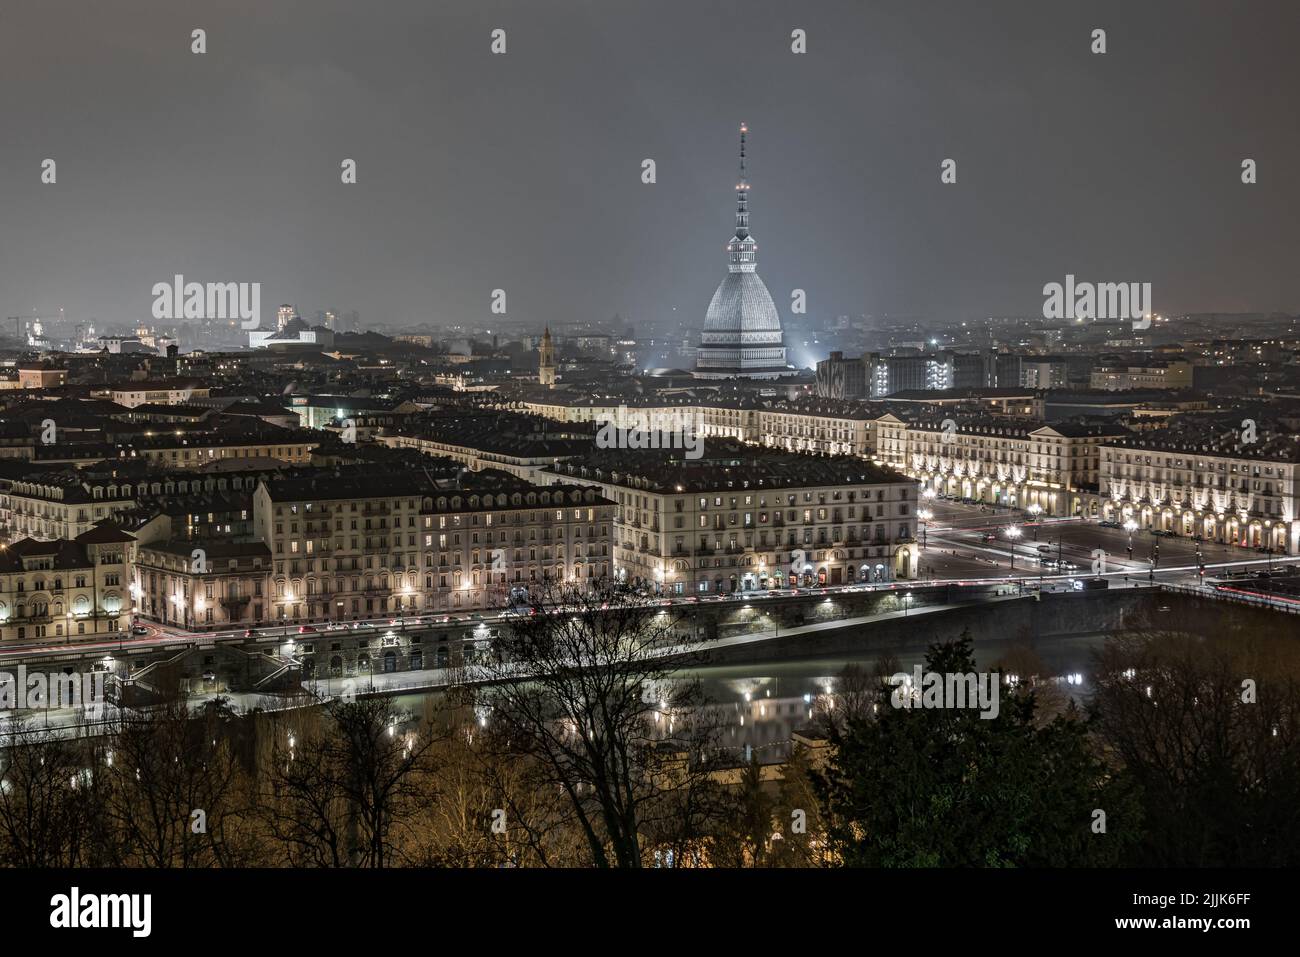 El paisaje urbano de Turín con alto Mole Antonelliana edificio durante el invierno Foto de stock